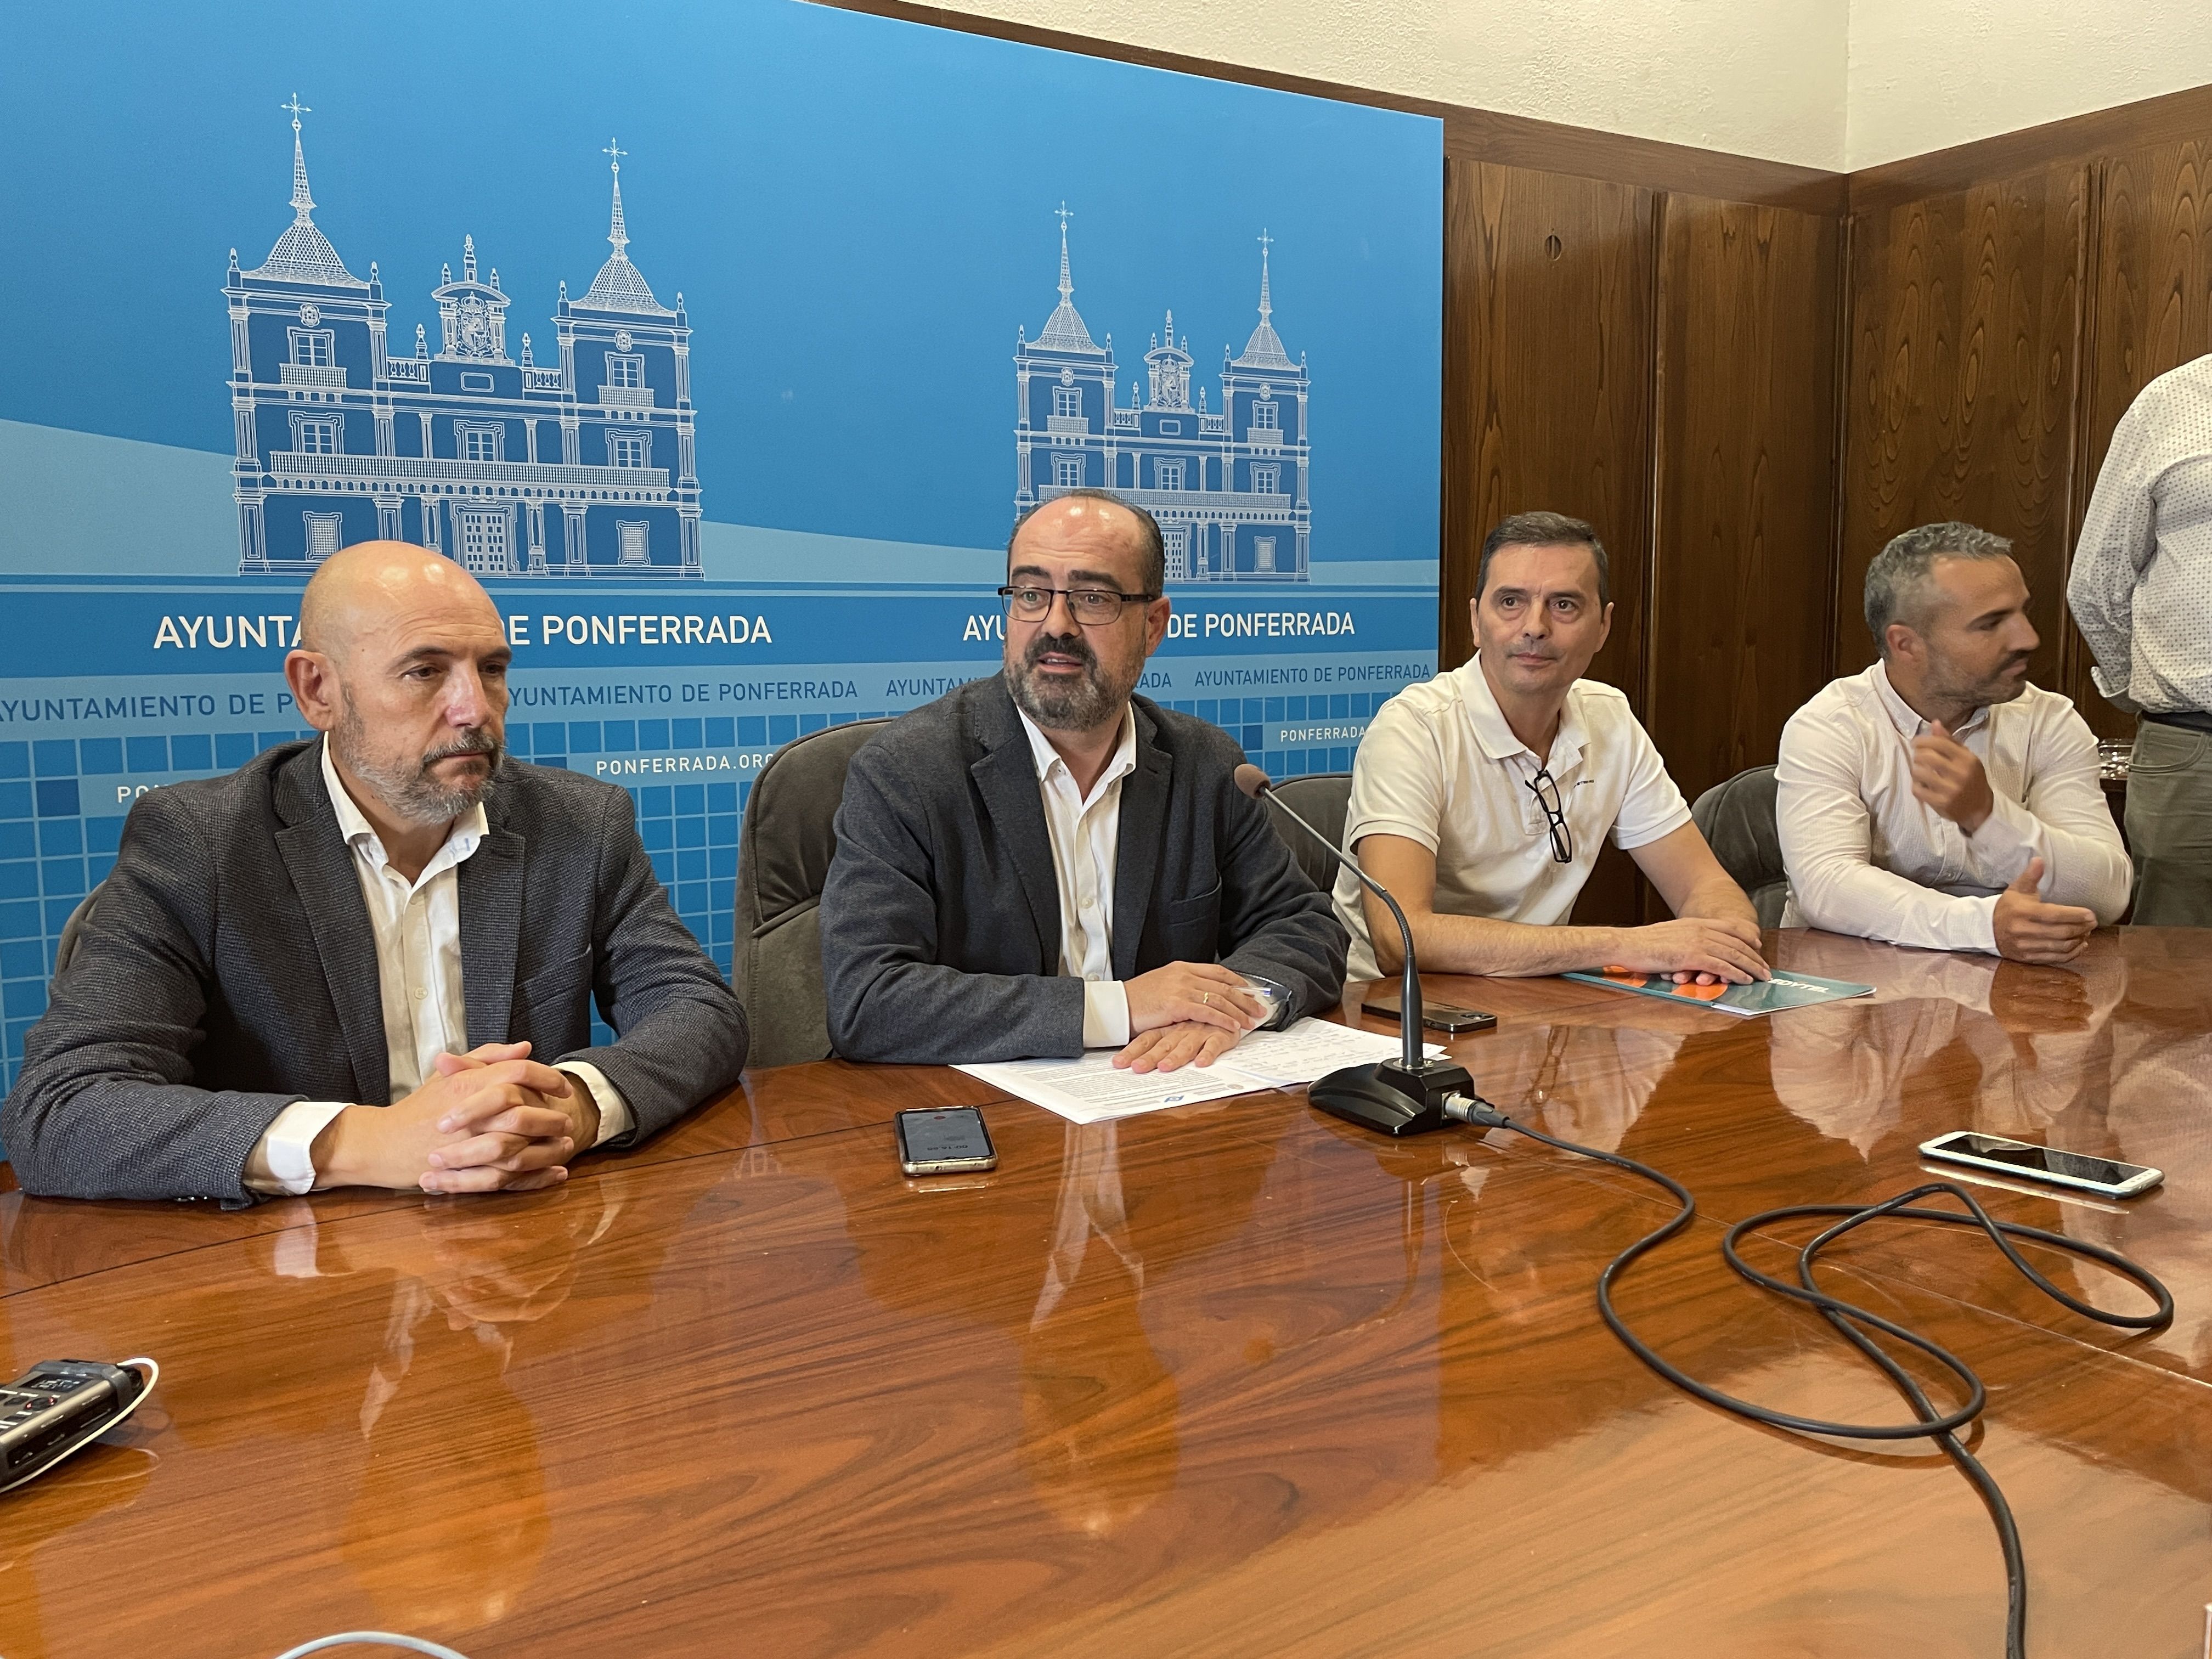 Anuncio de la noticia en el Ayuntamiento de Ponferrada. | Javier Fernández